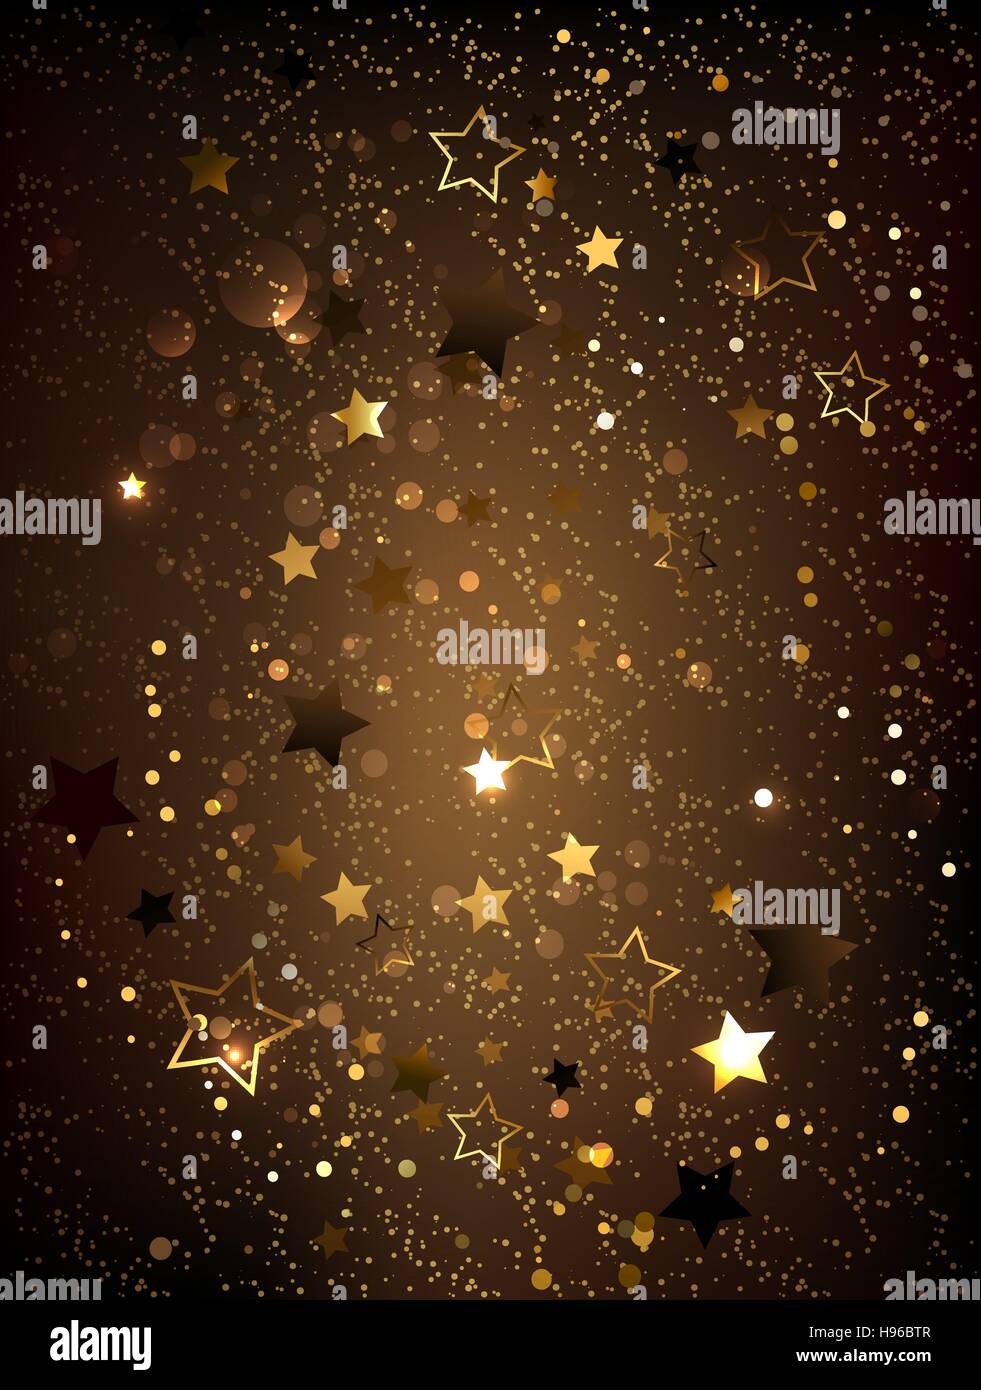 Dunkelbraun strukturiertem Hintergrund mit gold glänzenden kleinen Sternen. Stock Vektor